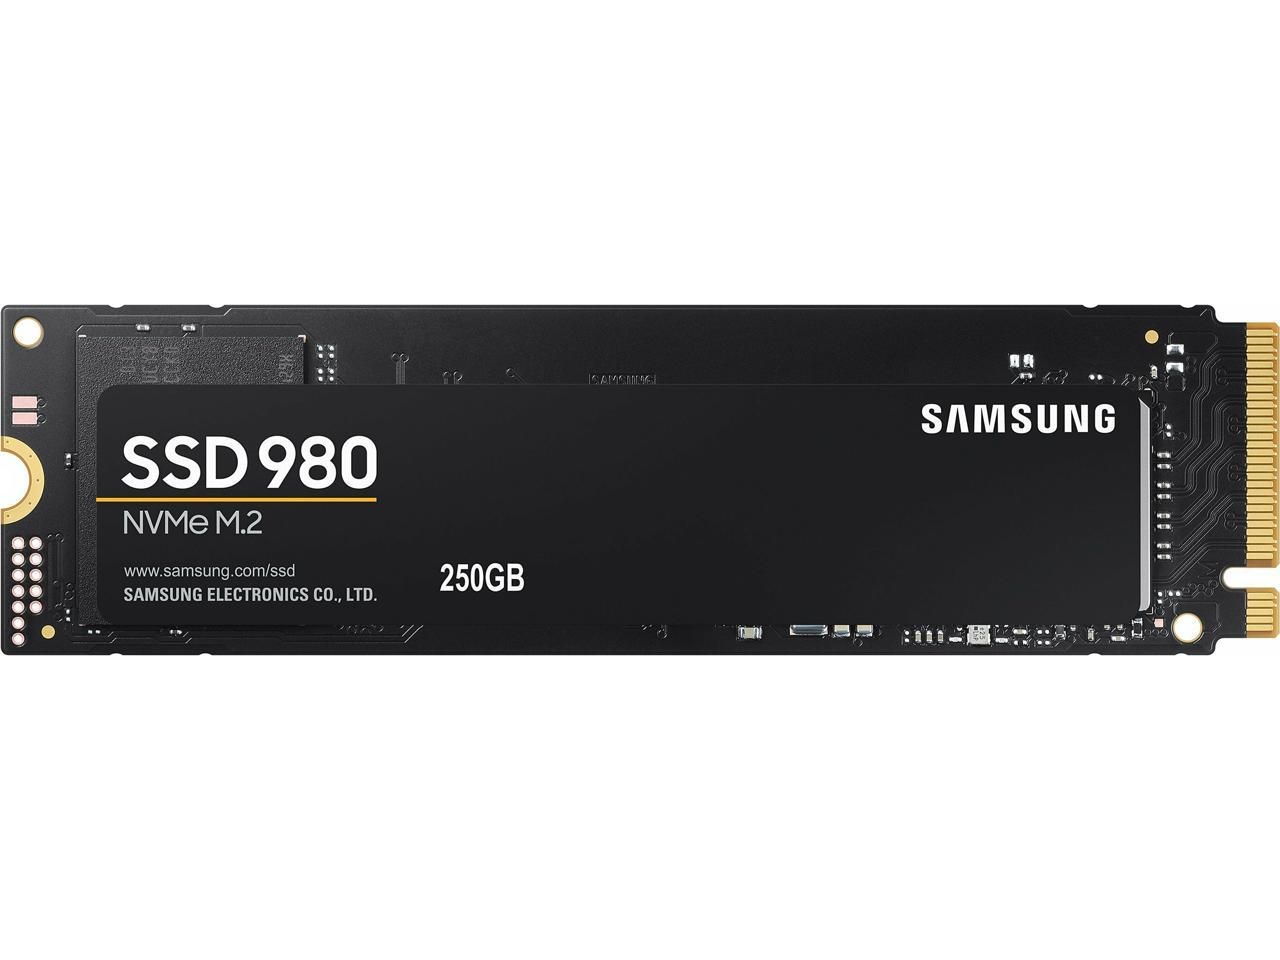 Твердотельный накопитель SSD M.2 2280 500gb Samsung 980 [MZ-v8v500bw] (r3100/w2600mb/s)_CN. Solid State Drive 980. MZ-v8v1t0bw. SSD Озон. Ssd mz v8v1t0bw